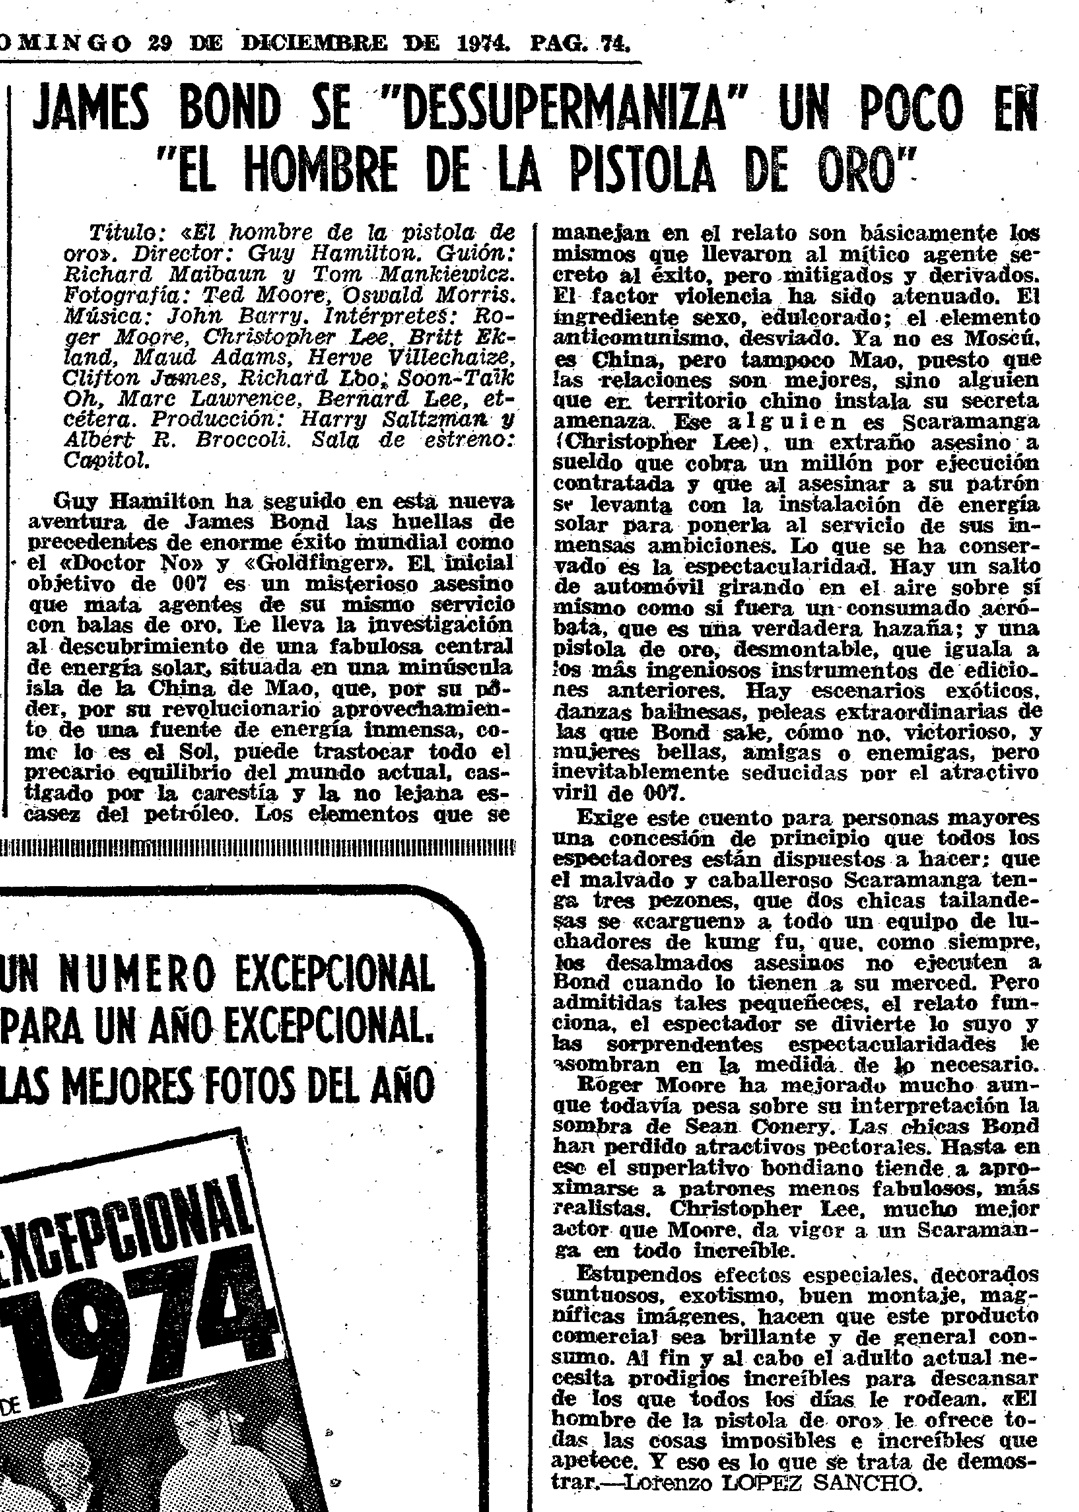 09 1974 12 29 ABC Madrid 074 Critica